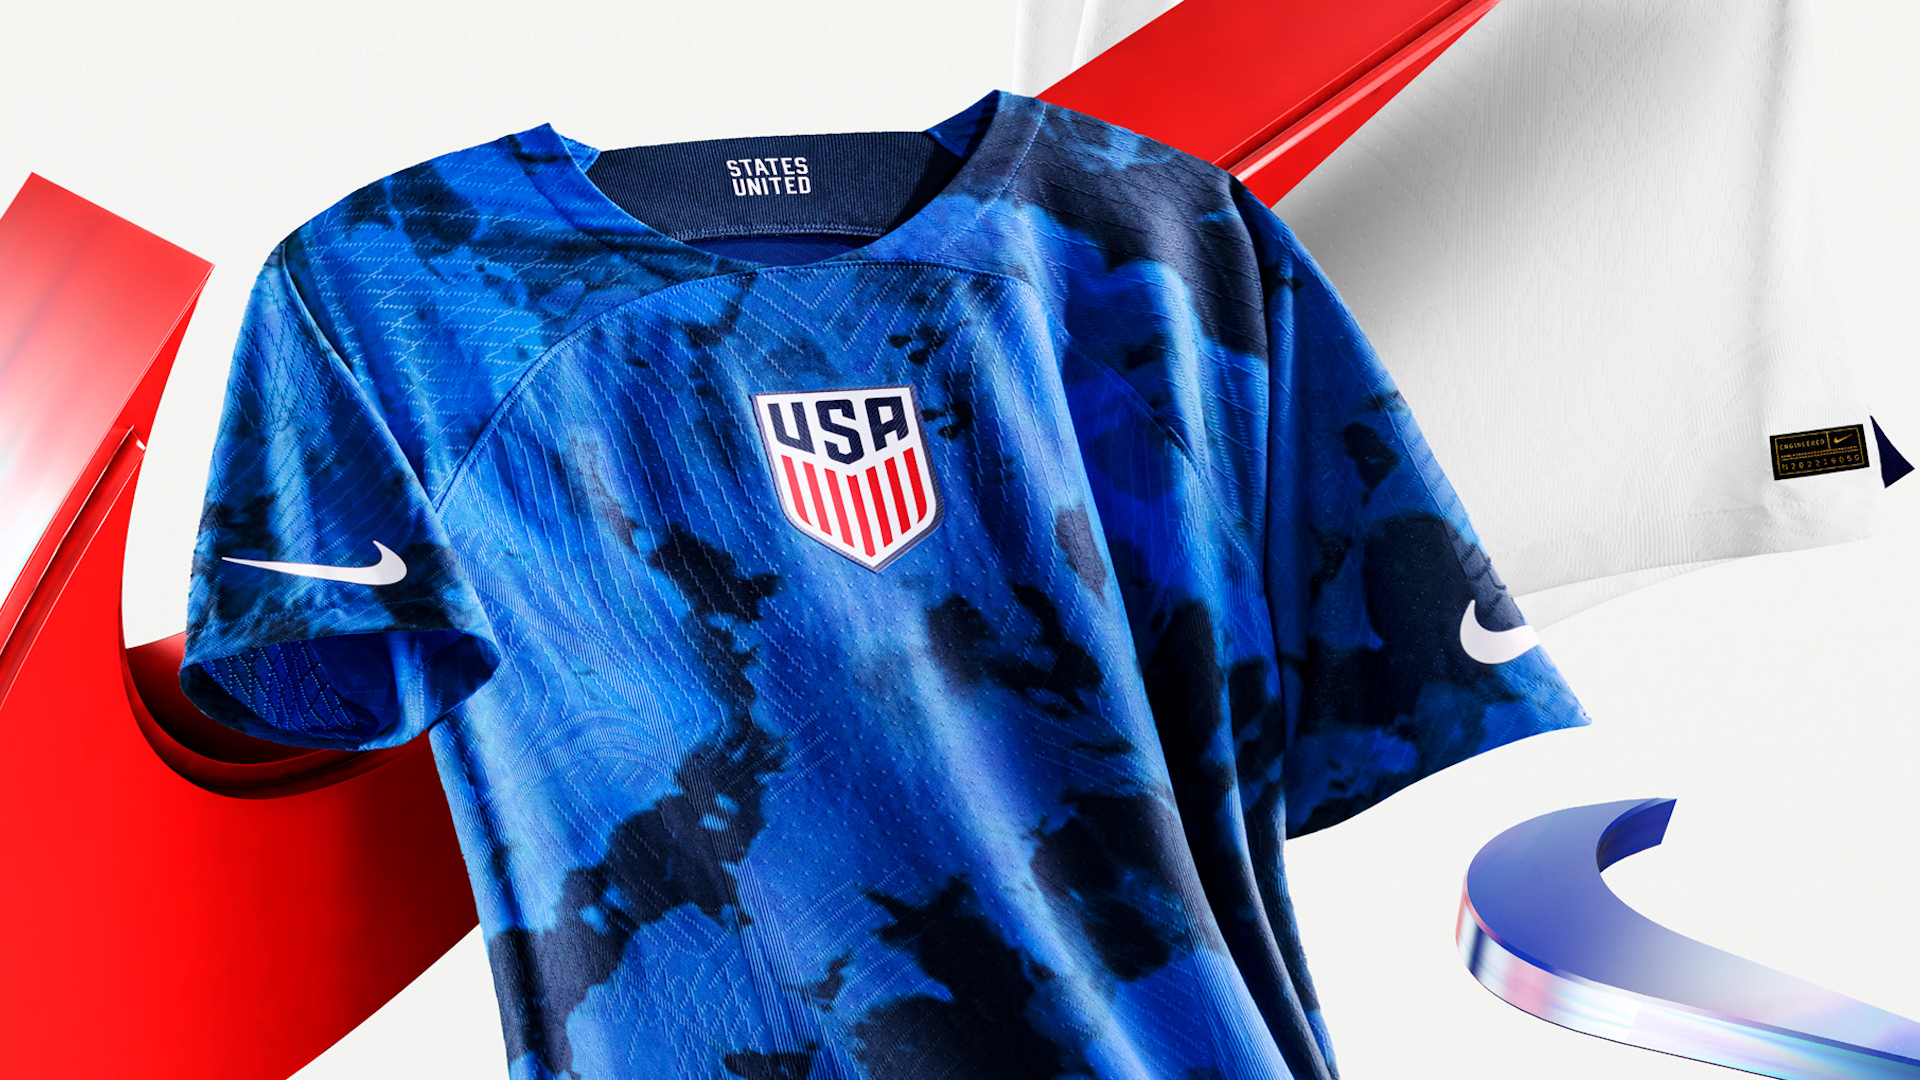 Nike presenta uniformes de local visitante de la selección de Estados Unidos en Catar 2022. – Telemundo Washington DC (44)